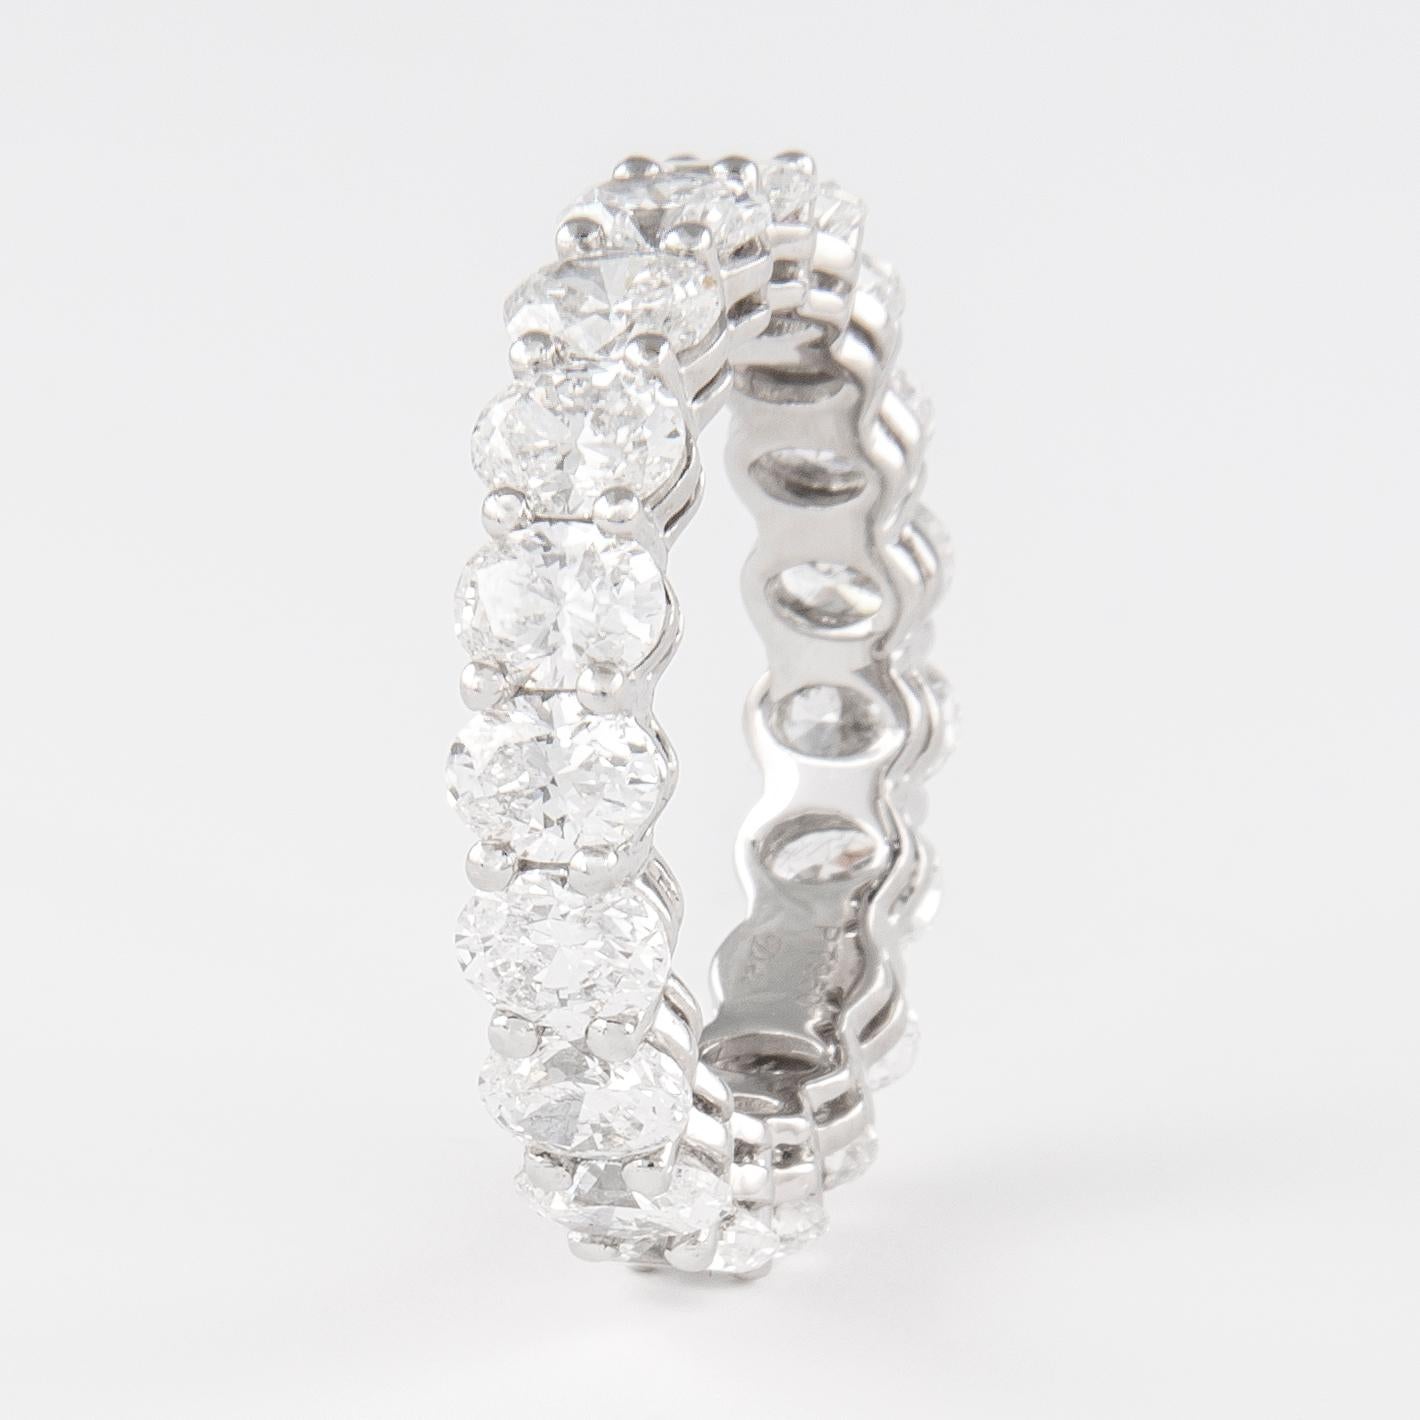 Magnifique bracelet d'éternité en diamant de taille ovale, par Alexander Beverly Hills.
19 diamants de taille ovale, 4,63 carats au total. Couleur F et pureté VS. Serti en or blanc 18 carats, 5,83 grammes, taille 6,75. 
Sur demande, une évaluation à